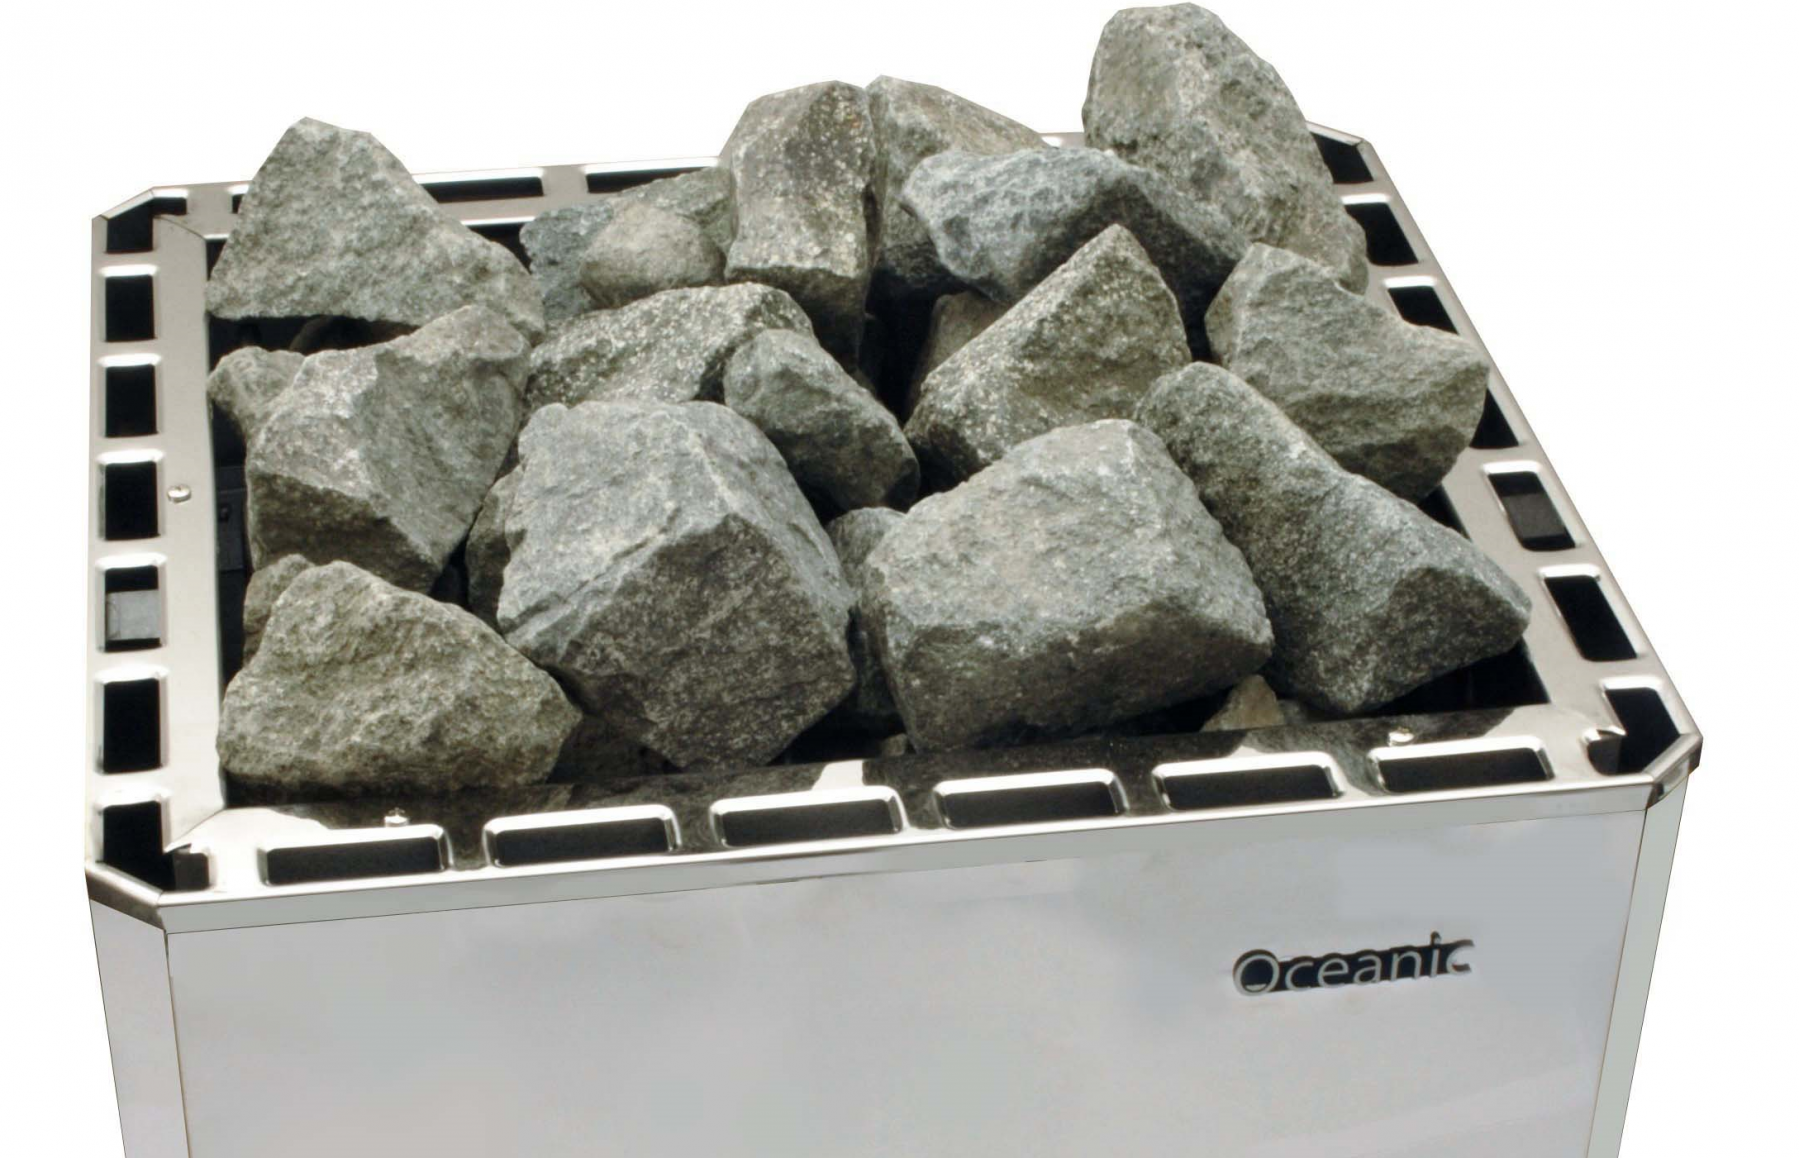 Piedras para sauna prémium pre-lavadas para todos los hornos de sauna resistente al calor grano 50-80 mm DIABAS 